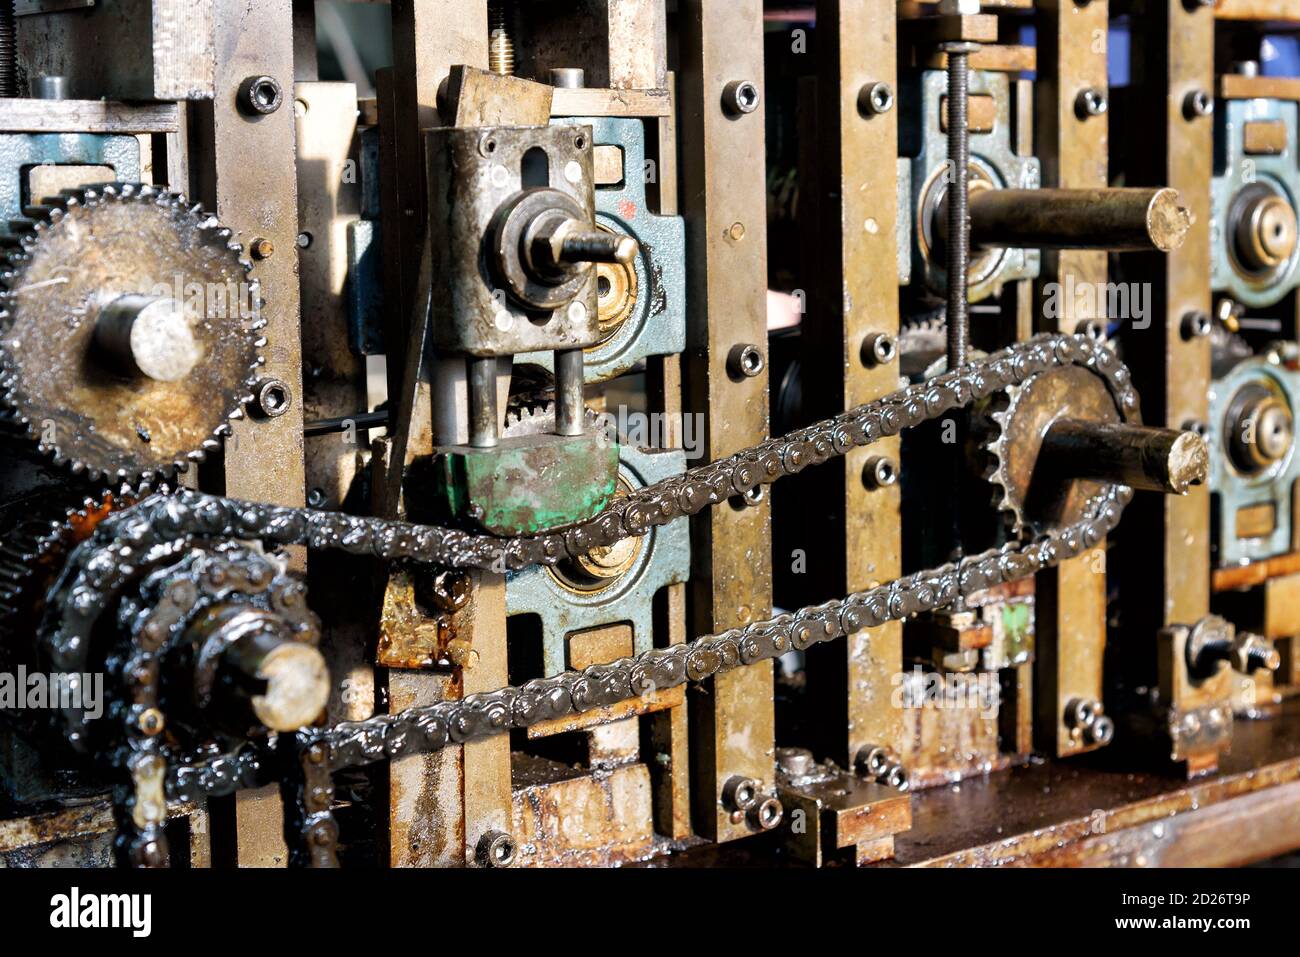 Primo piano sulla catena di trasmissione dei macchinari industriali che mostra la catena e gli ingranaggi per la trasmissione della potenza Foto Stock